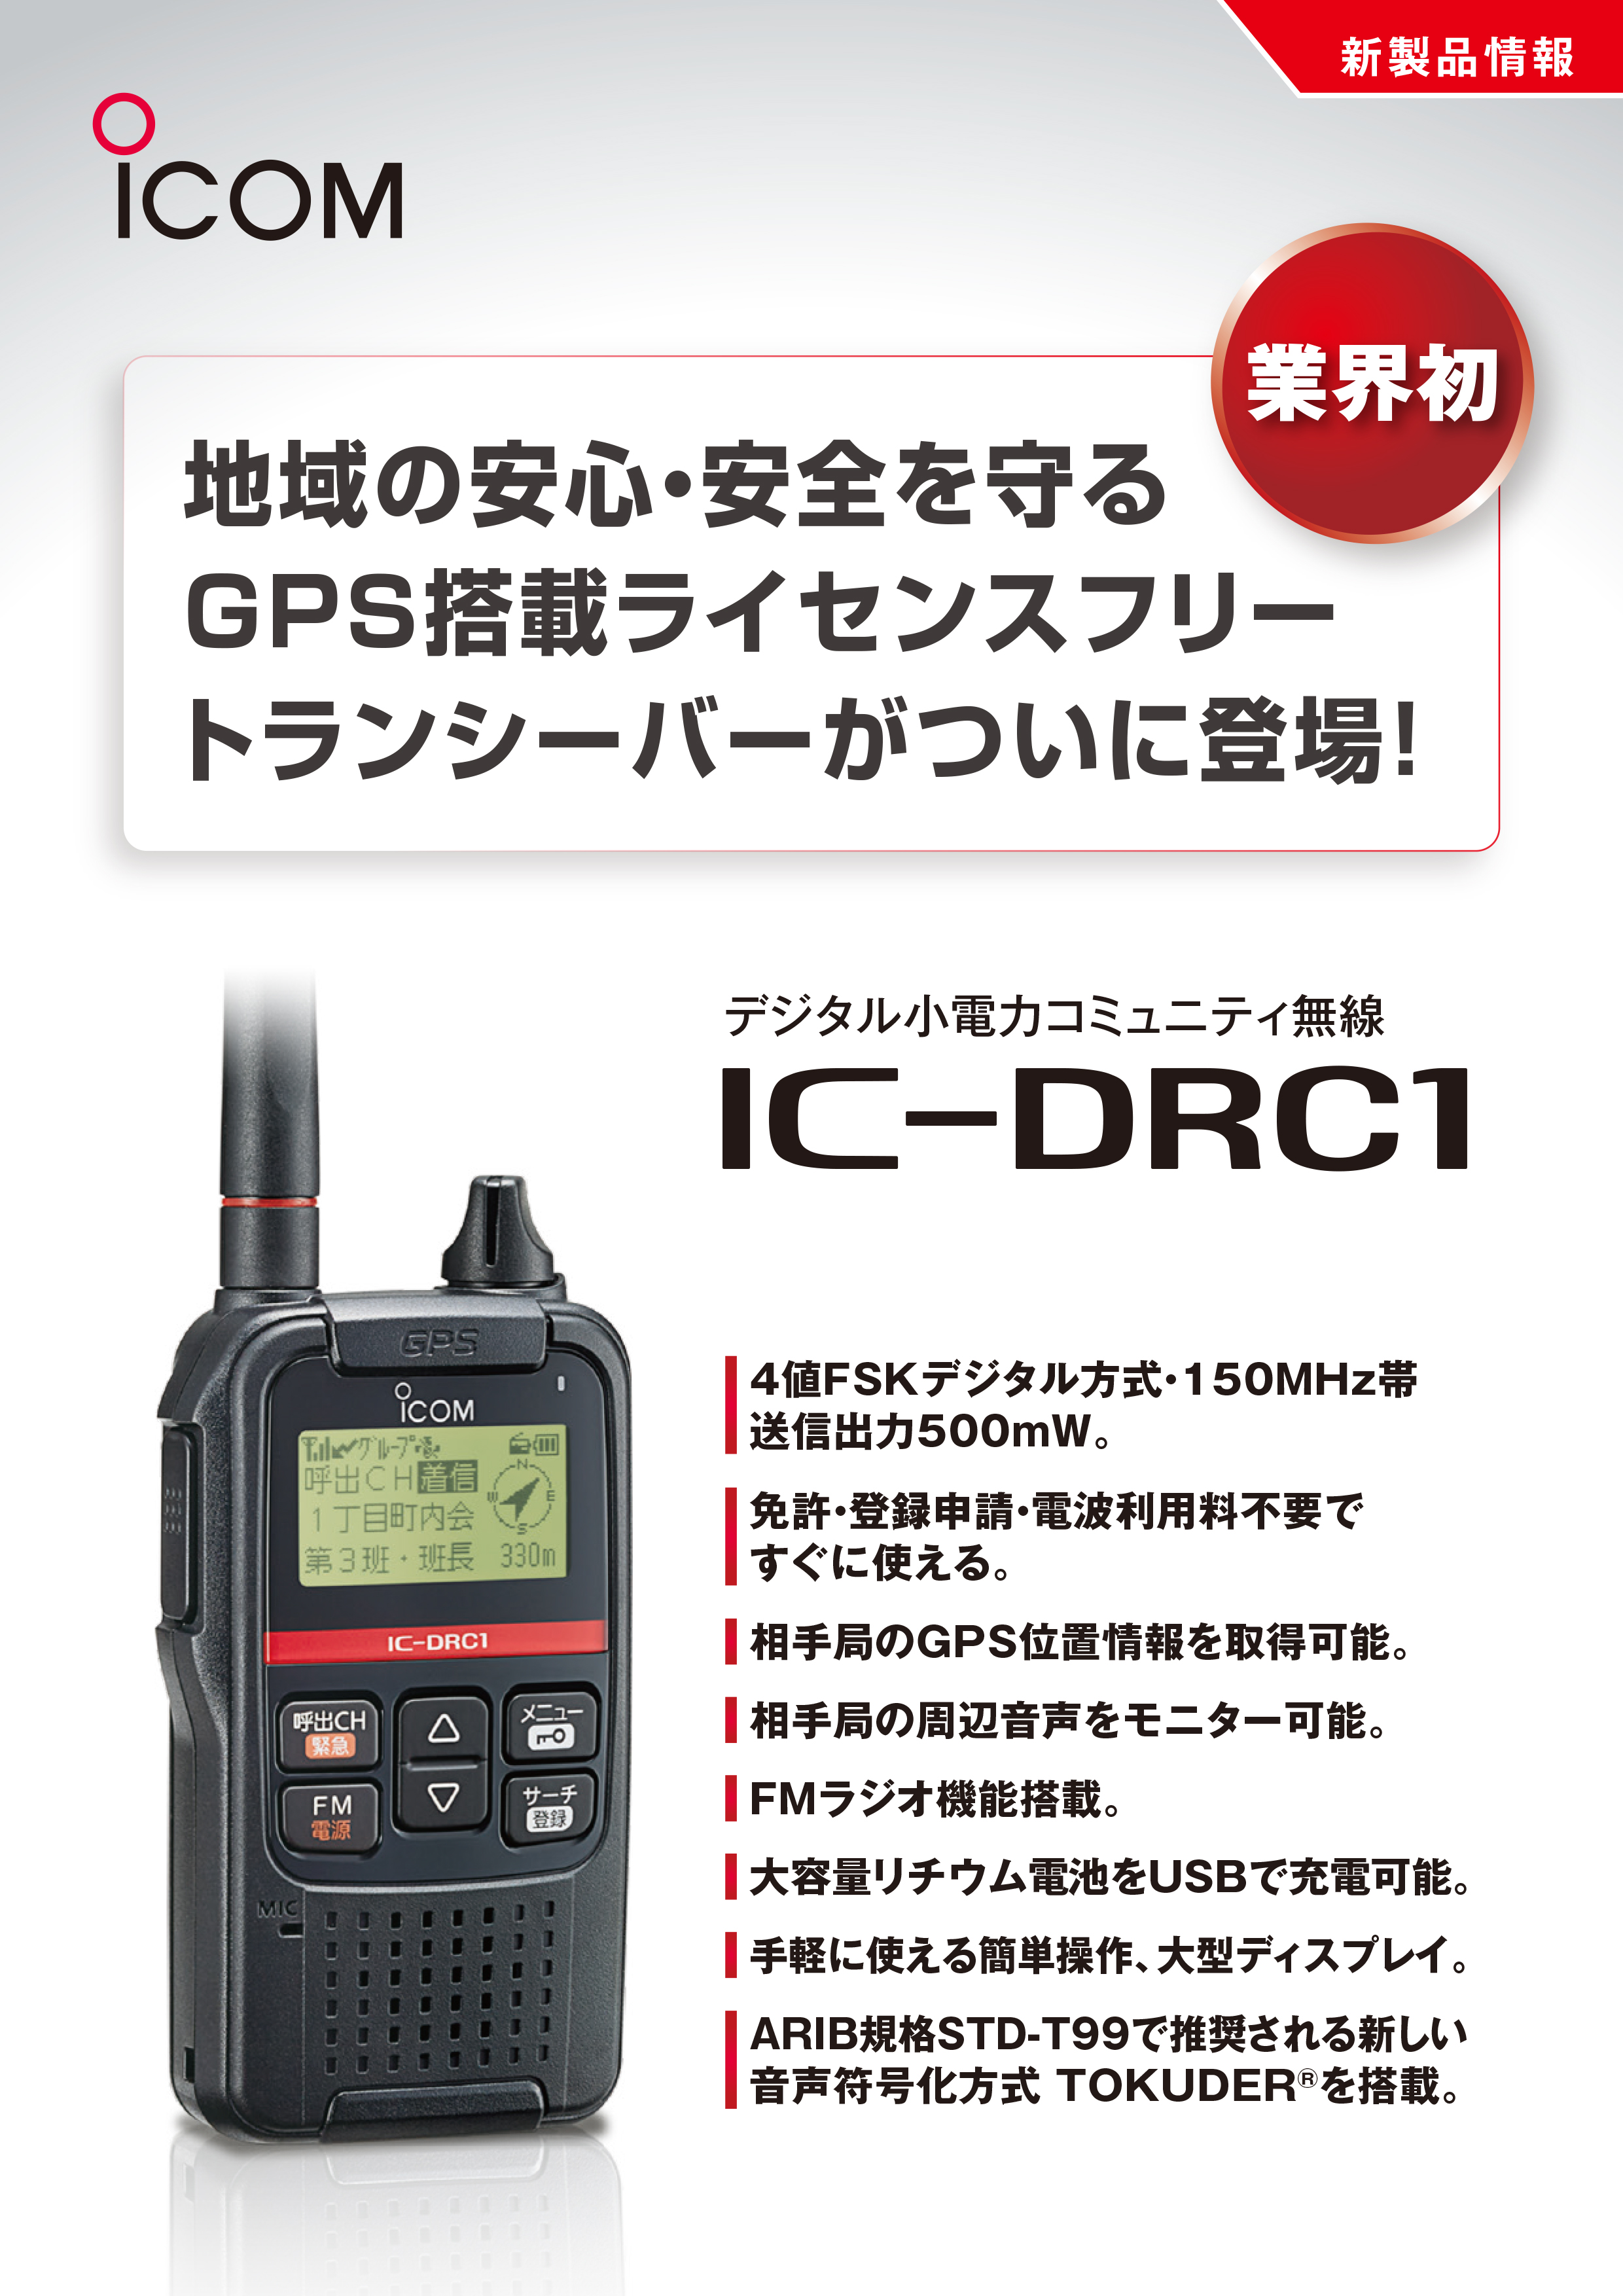 ICOM IC-DRC1MK2 デジタル小電力コミュニティワイヤレス ブラック 通販